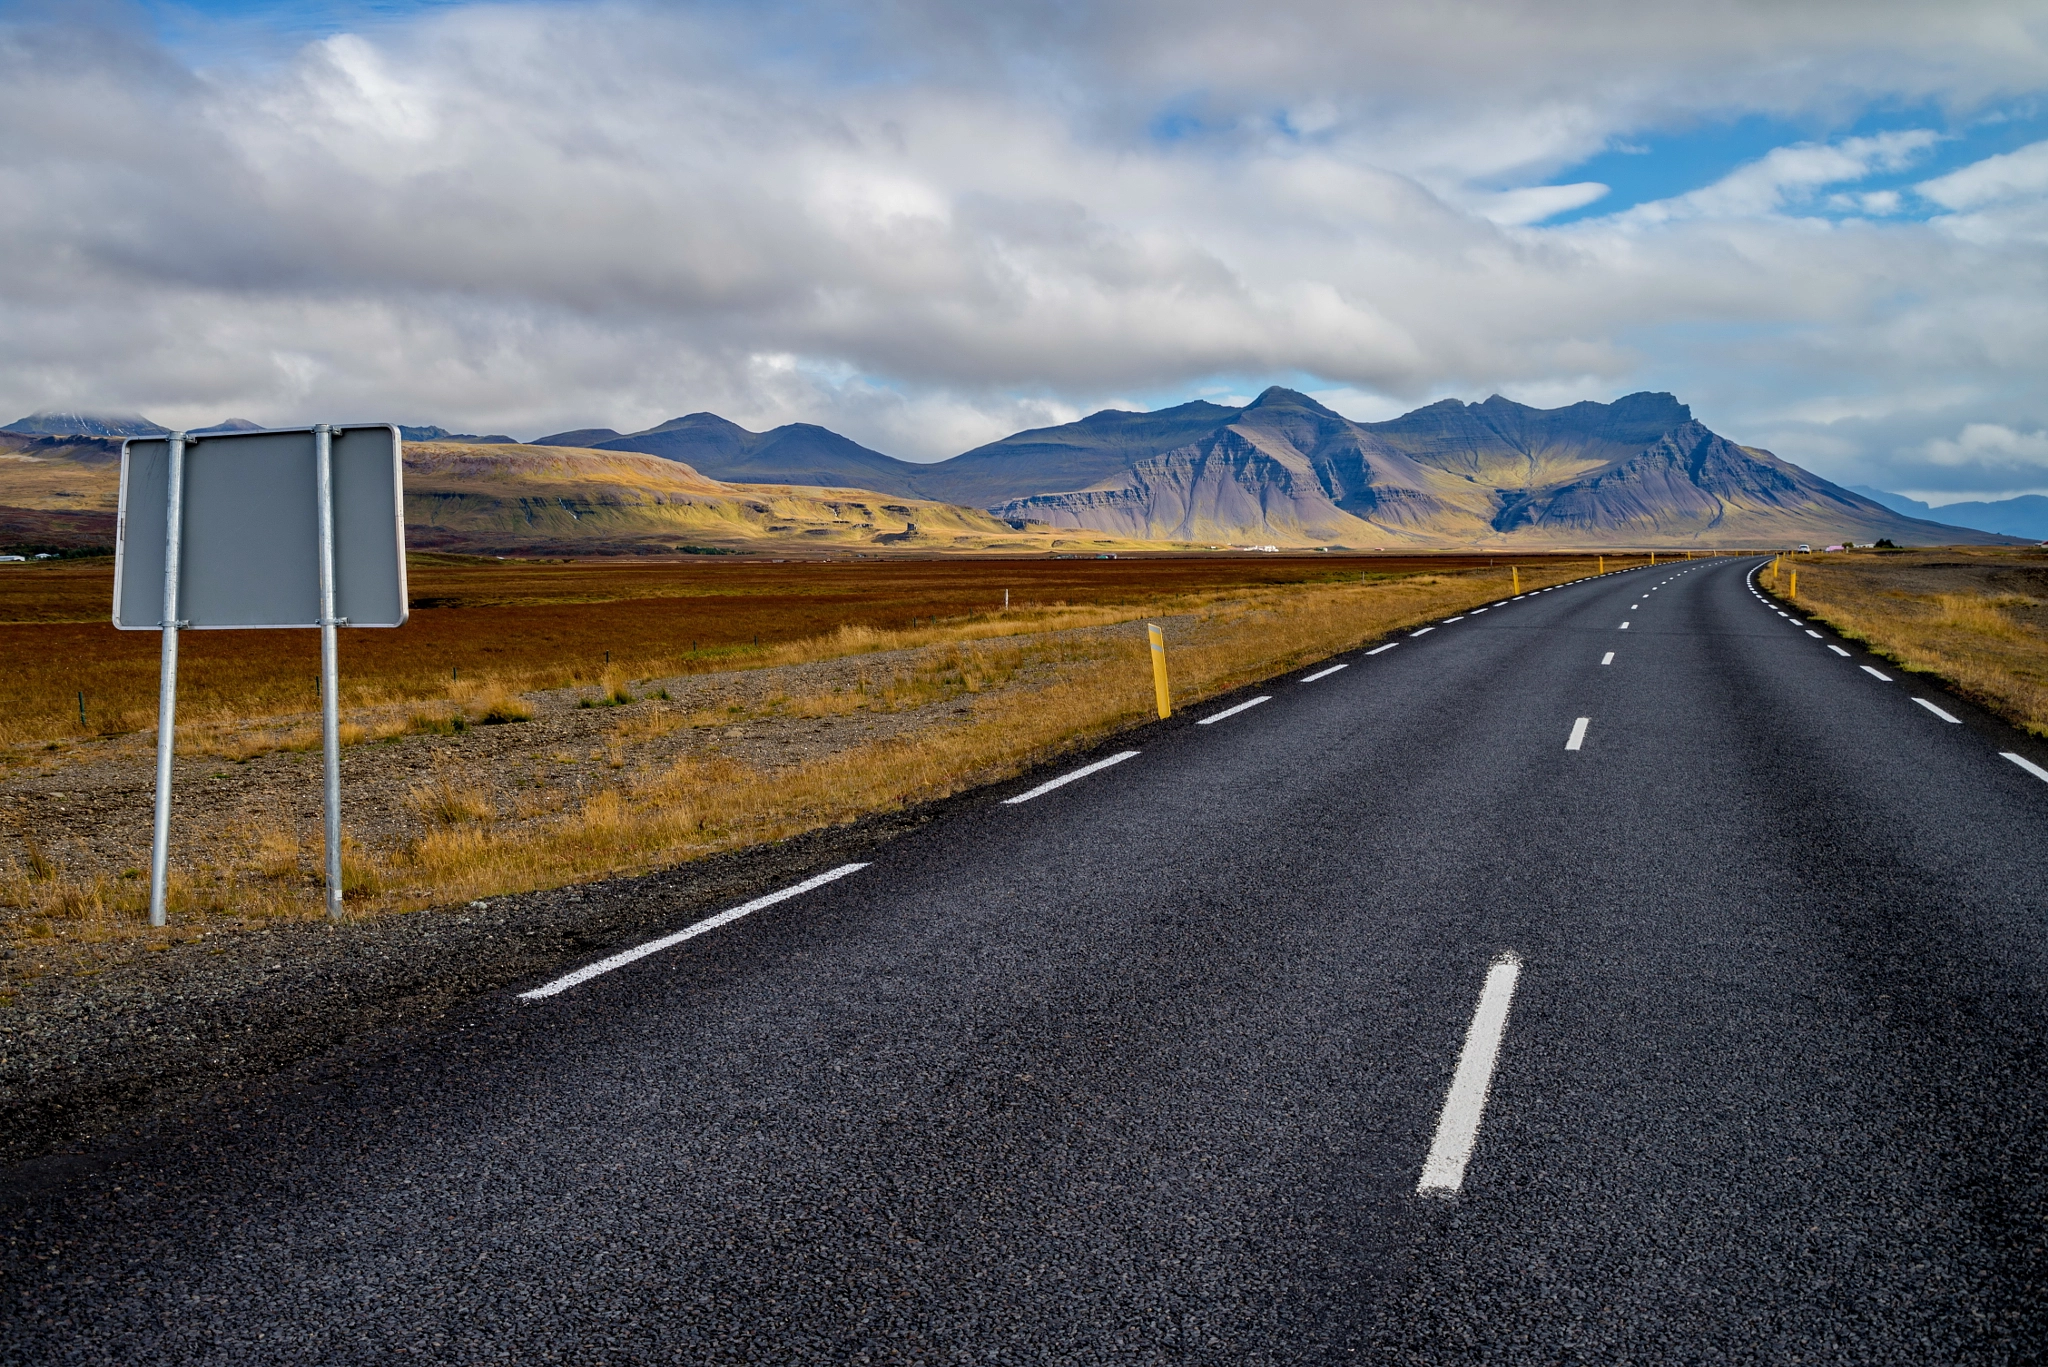 Ring road (nember 1) of Iceland